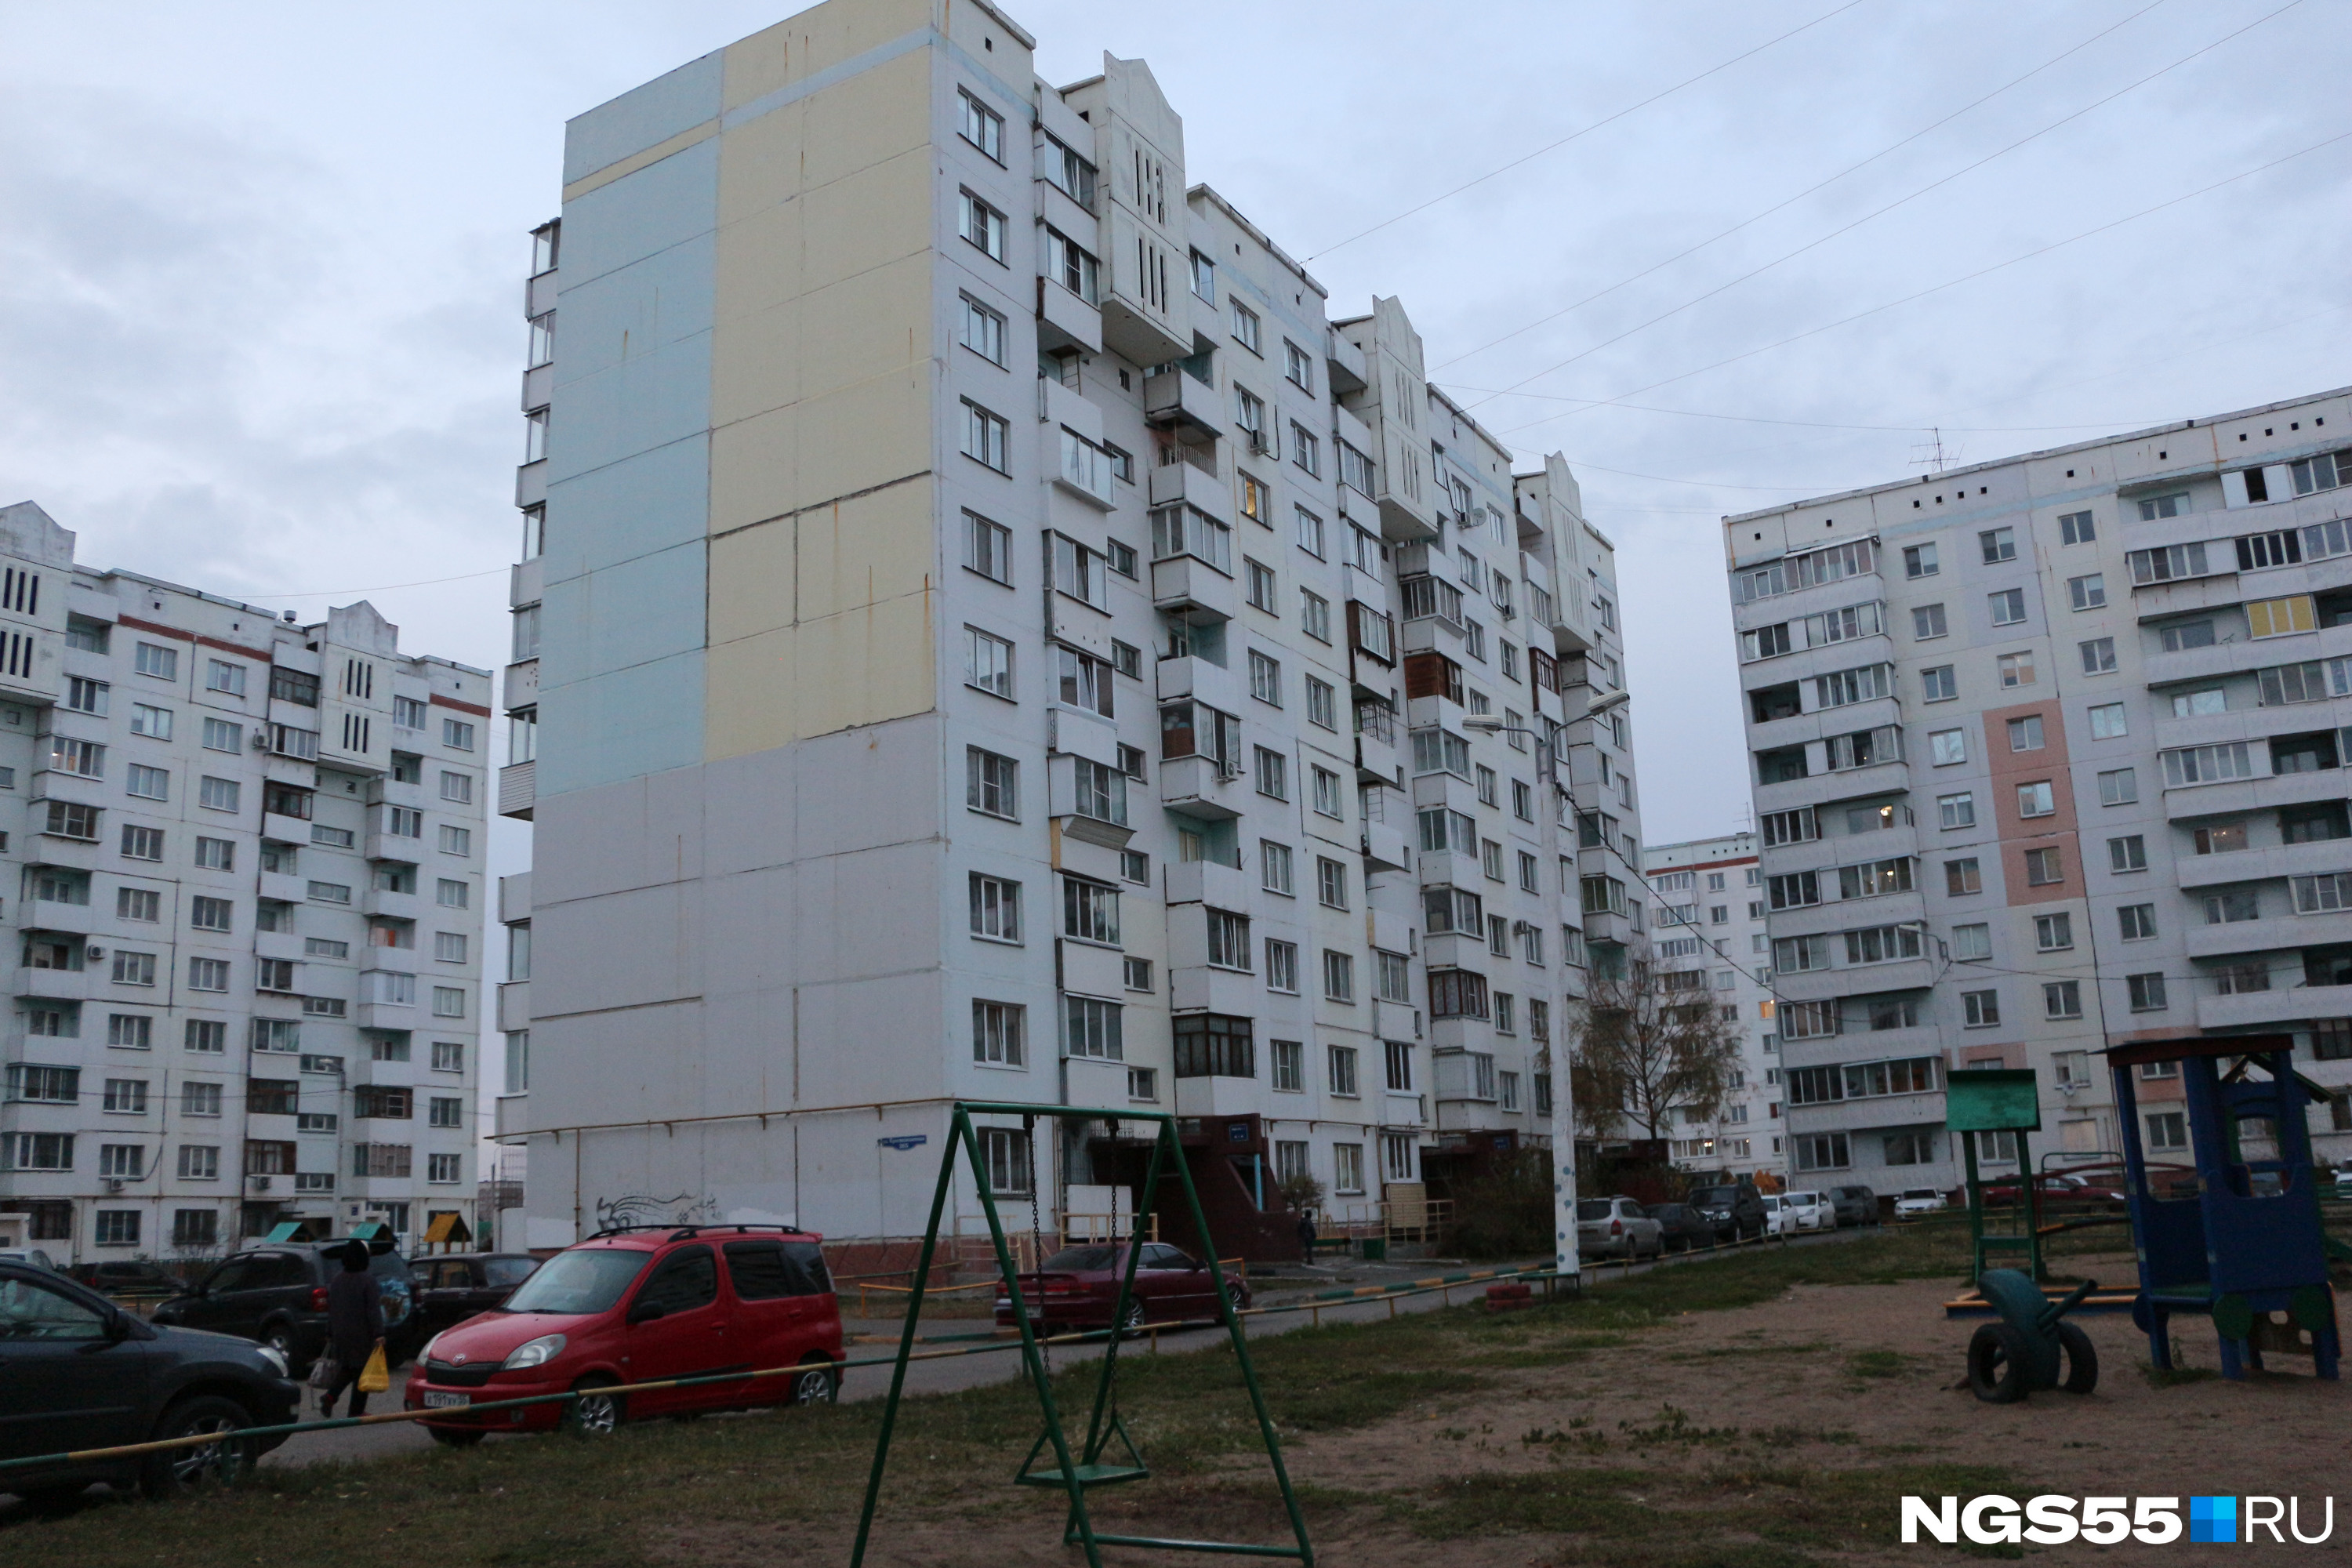 Застройщики Омска и других городов по-прежнему держали курс на недорогое жилье